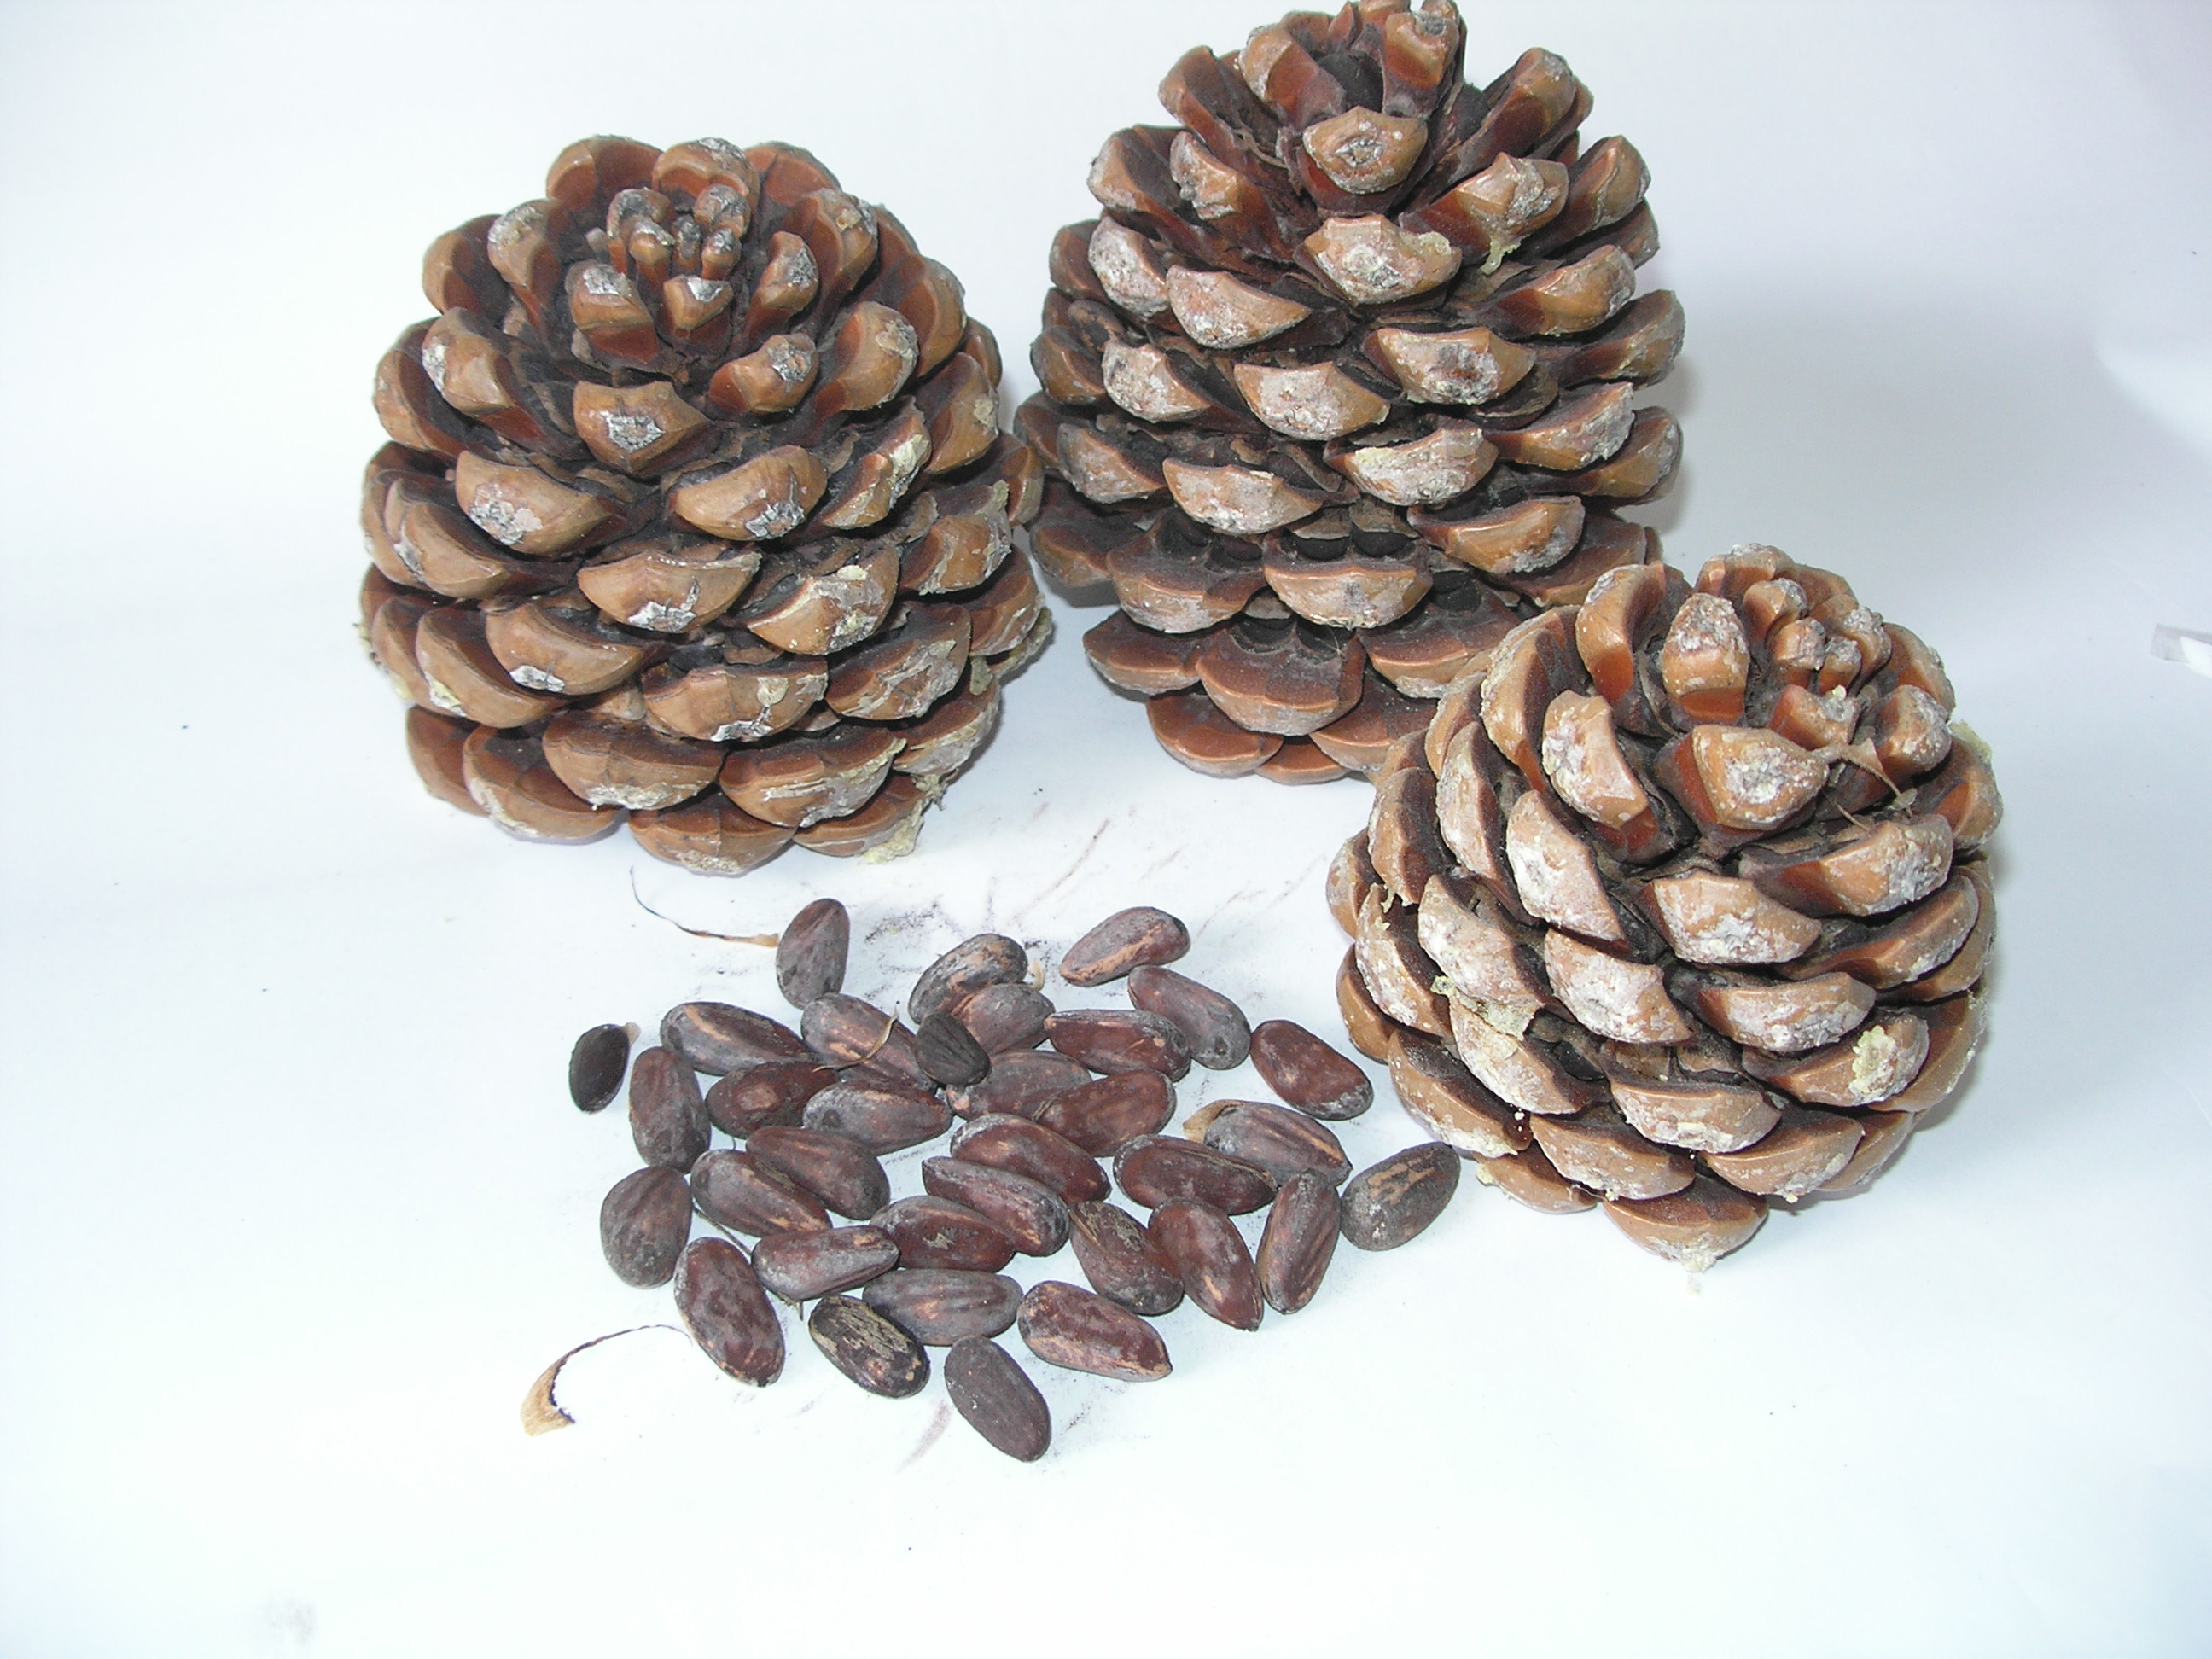 Mediterranean pine cones and nuts